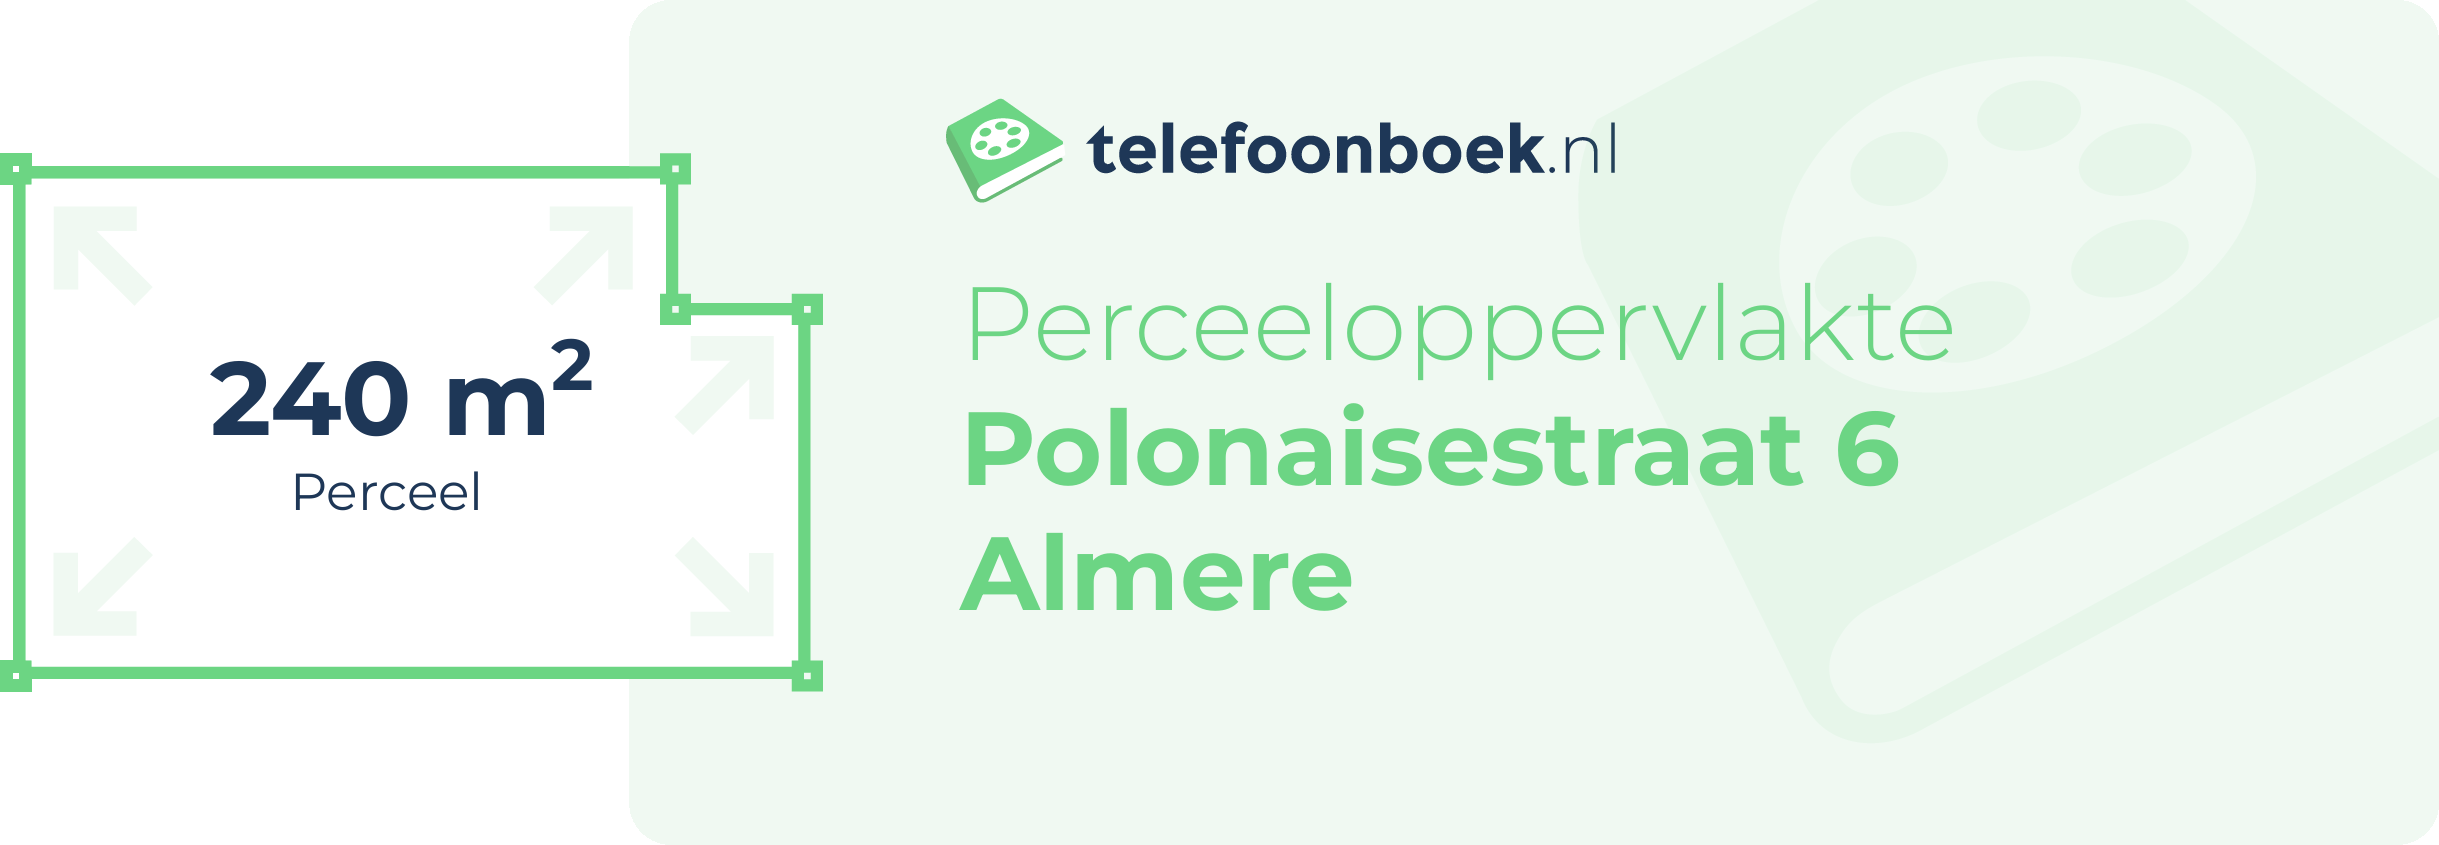 Perceeloppervlakte Polonaisestraat 6 Almere